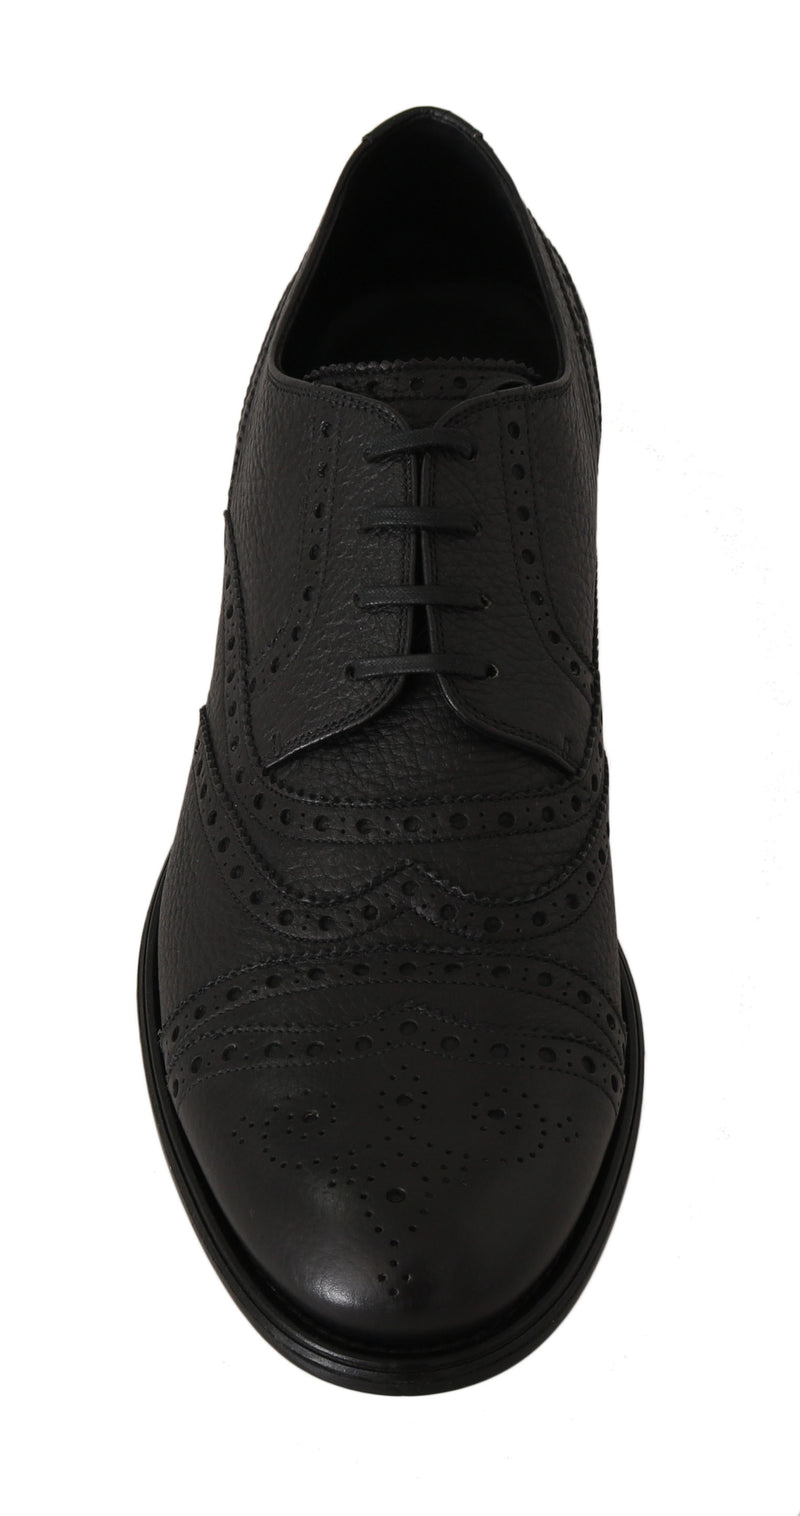 Black Leather Wingtip Derby Formal Shoes